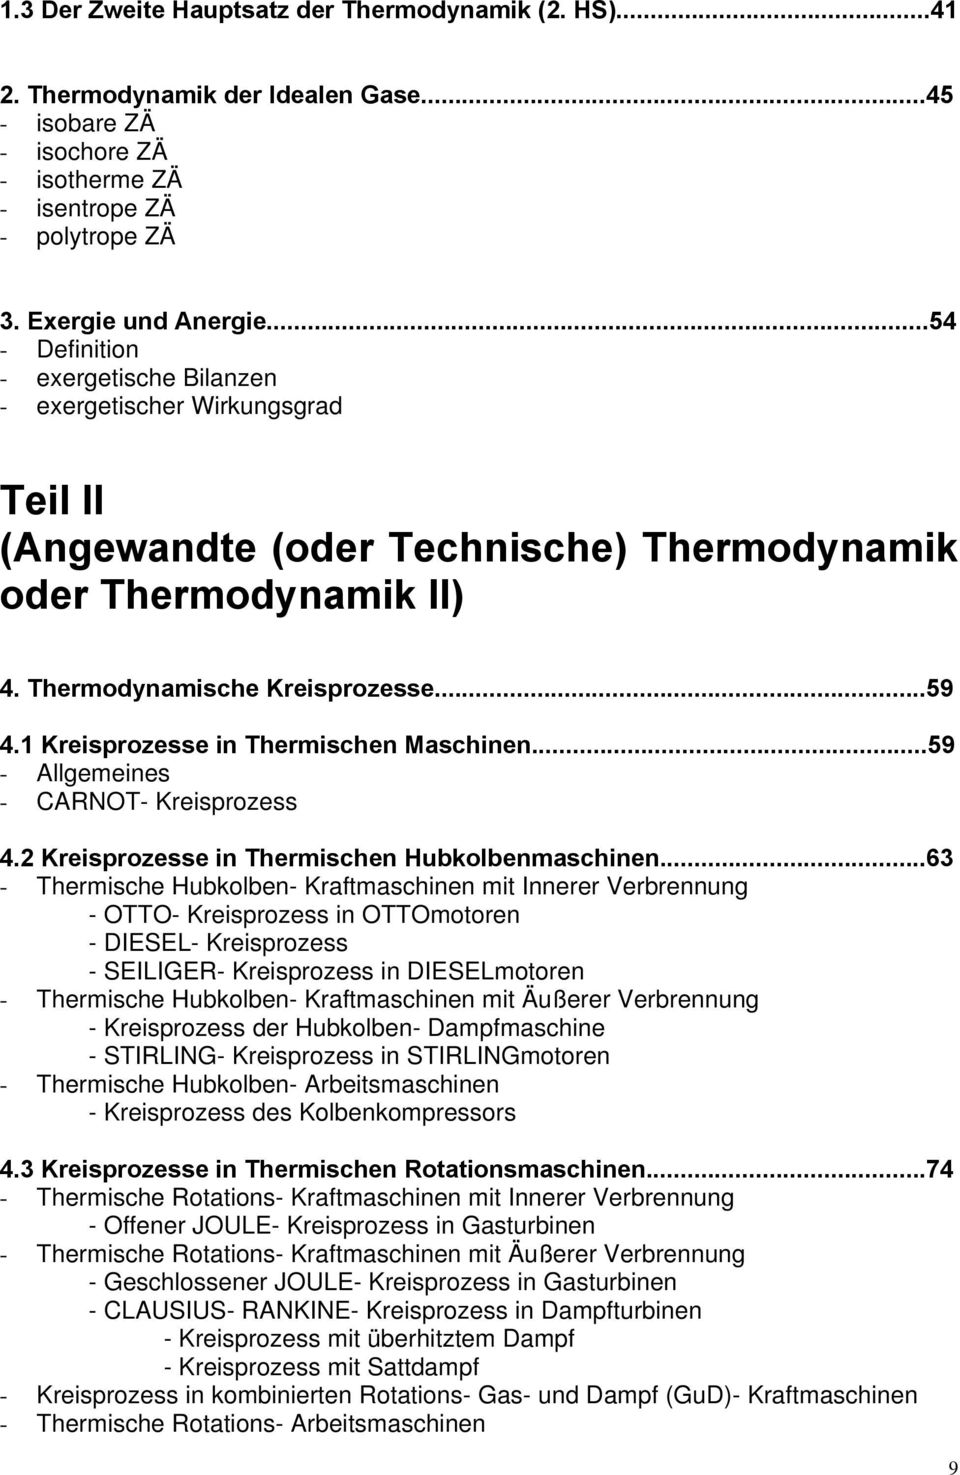 1 Kreisprozesse in Thermischen Maschinen...59 - Allgemeines - CARNOT- Kreisprozess 4.2 Kreisprozesse in Thermischen Hubkolbenmaschinen.